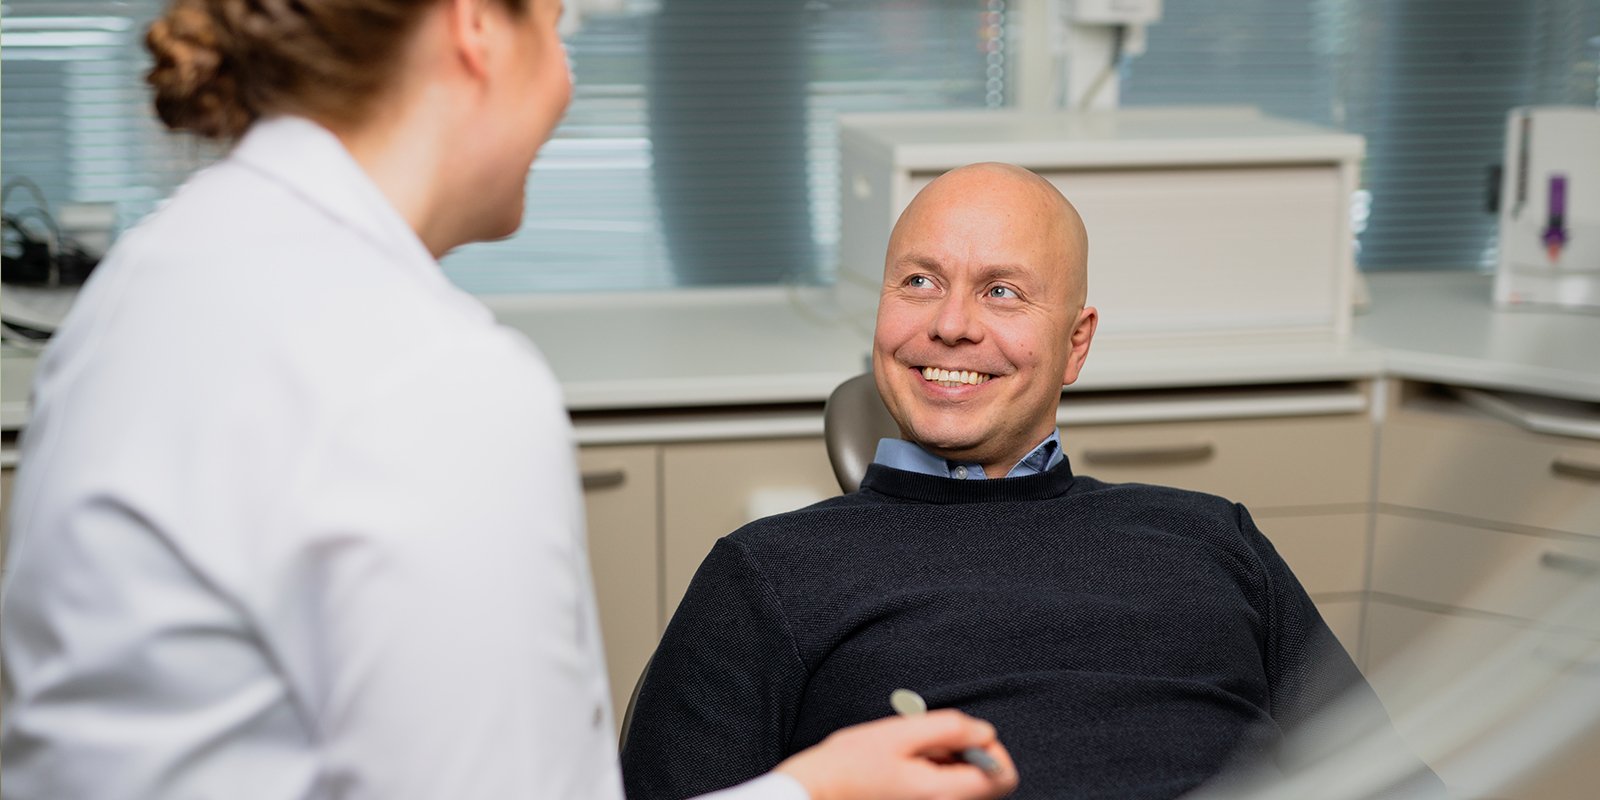 Mies istuu hammashoitotuolissa ja hymyilee leveästi